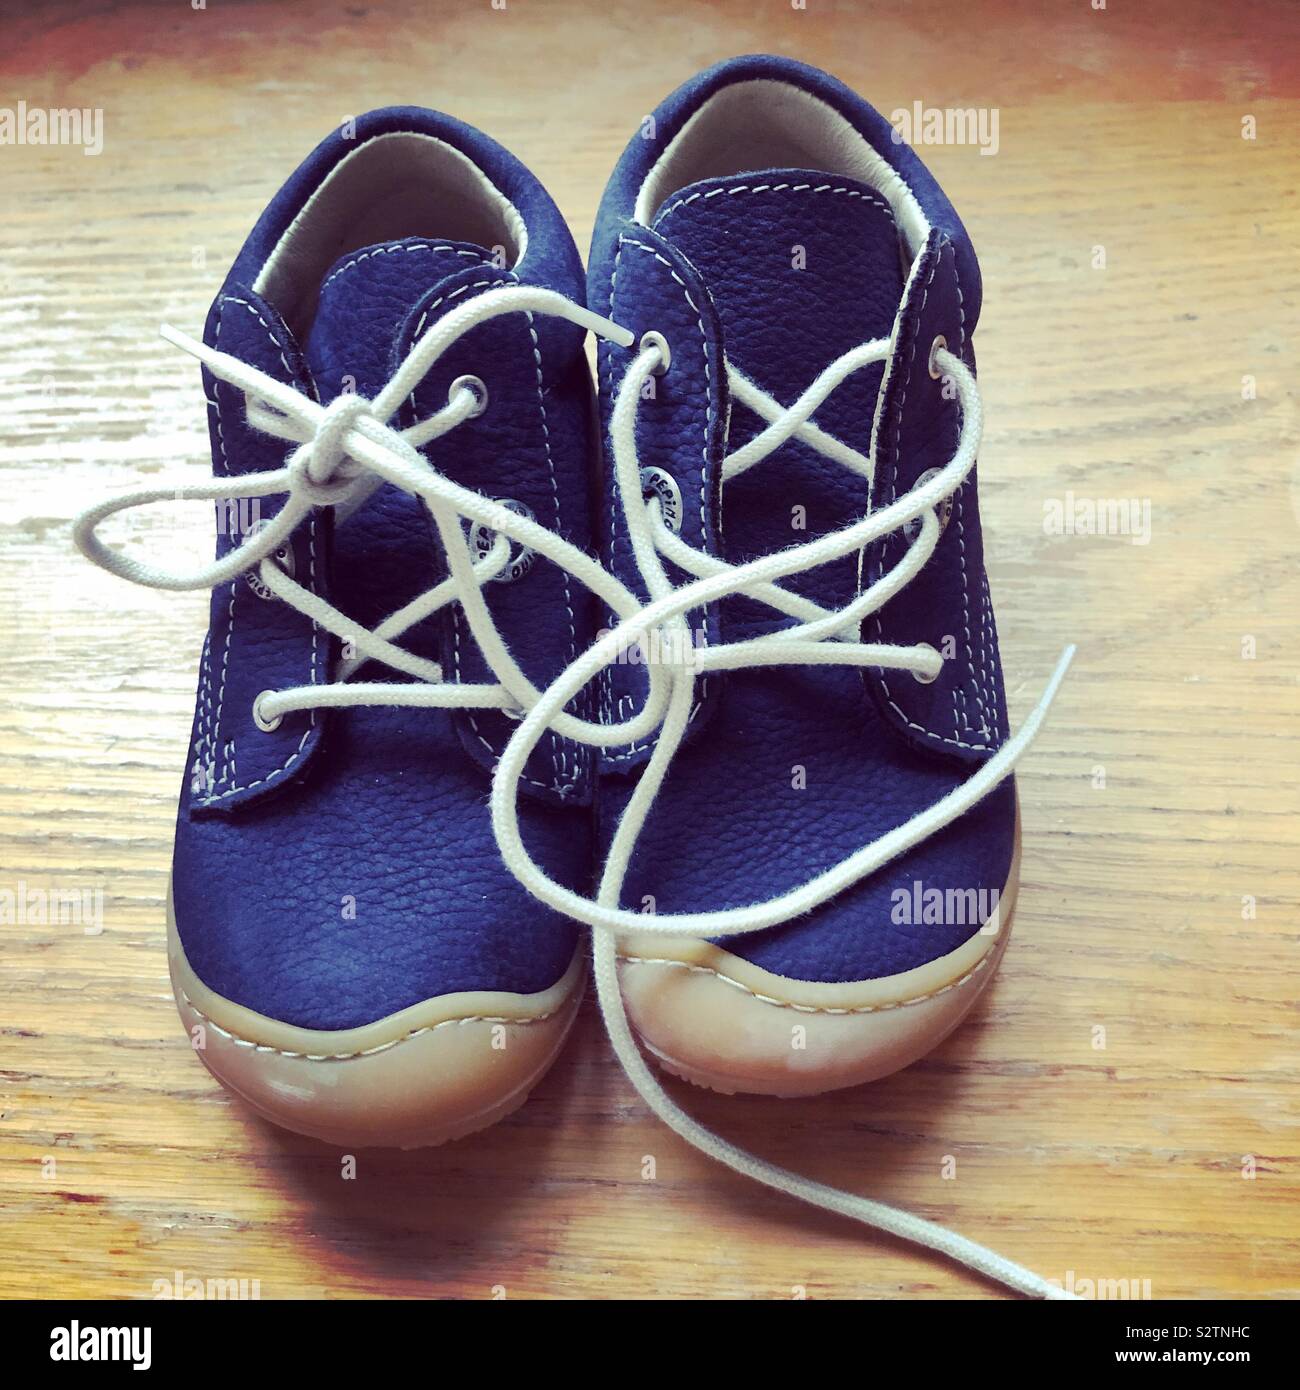 Die ersten Schuhe für Kleinkinder Stockfotografie - Alamy